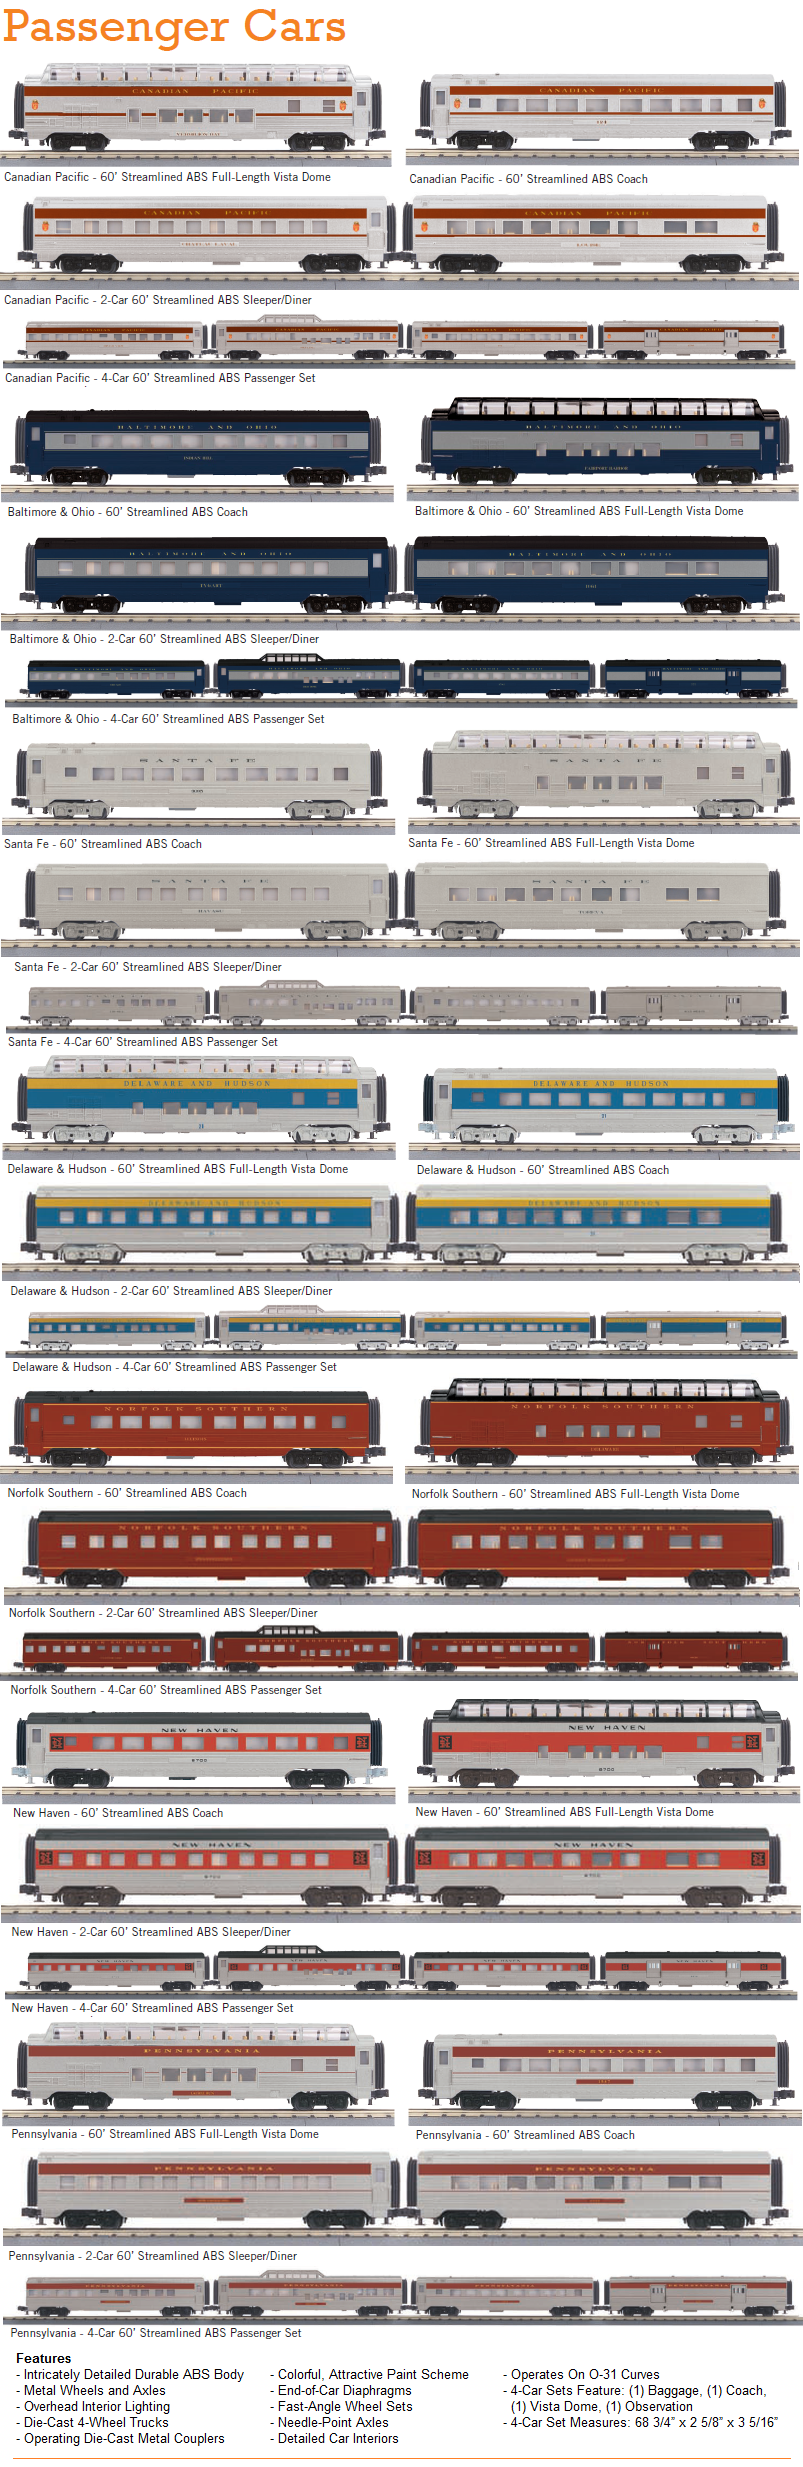 RailKing_Passenger_Nov2014_media